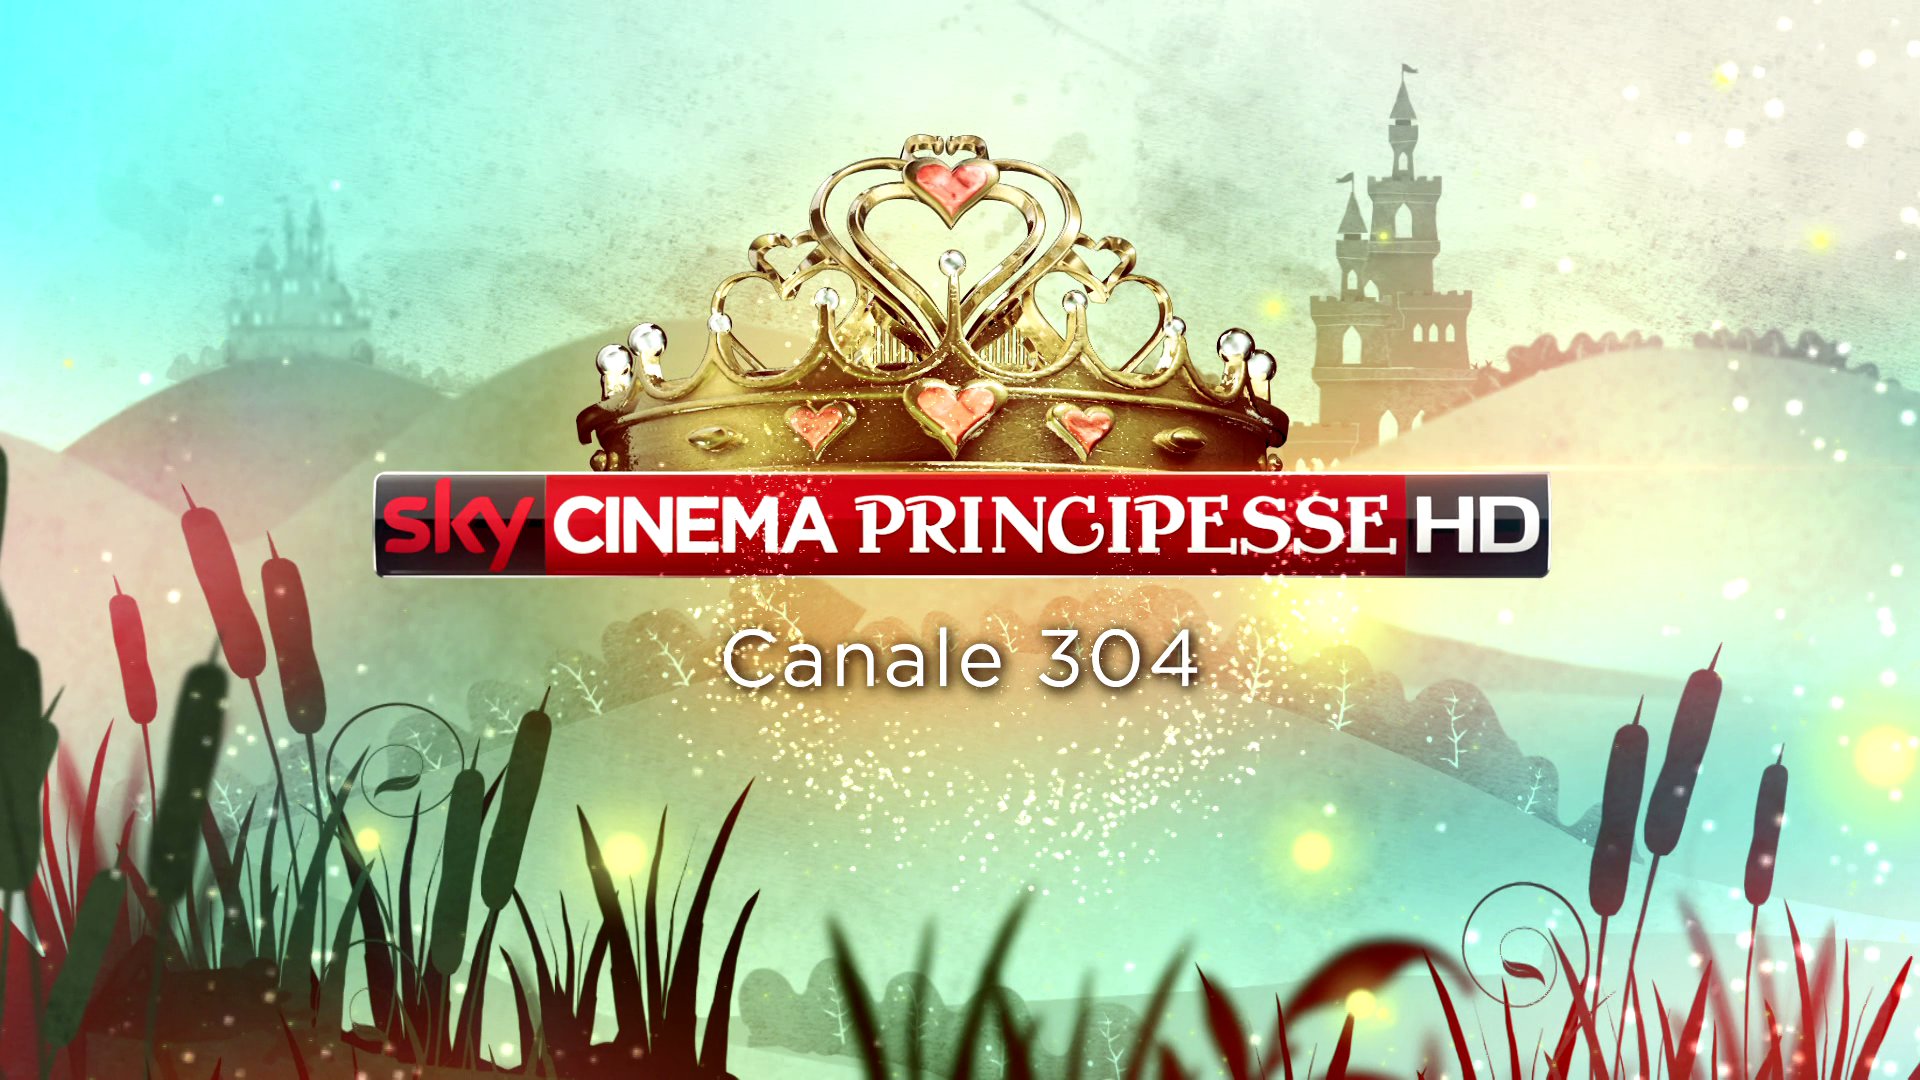 Sky Cinema Principesse, dal 3 al 12 Aprile il canale 304 si trasforma per magia